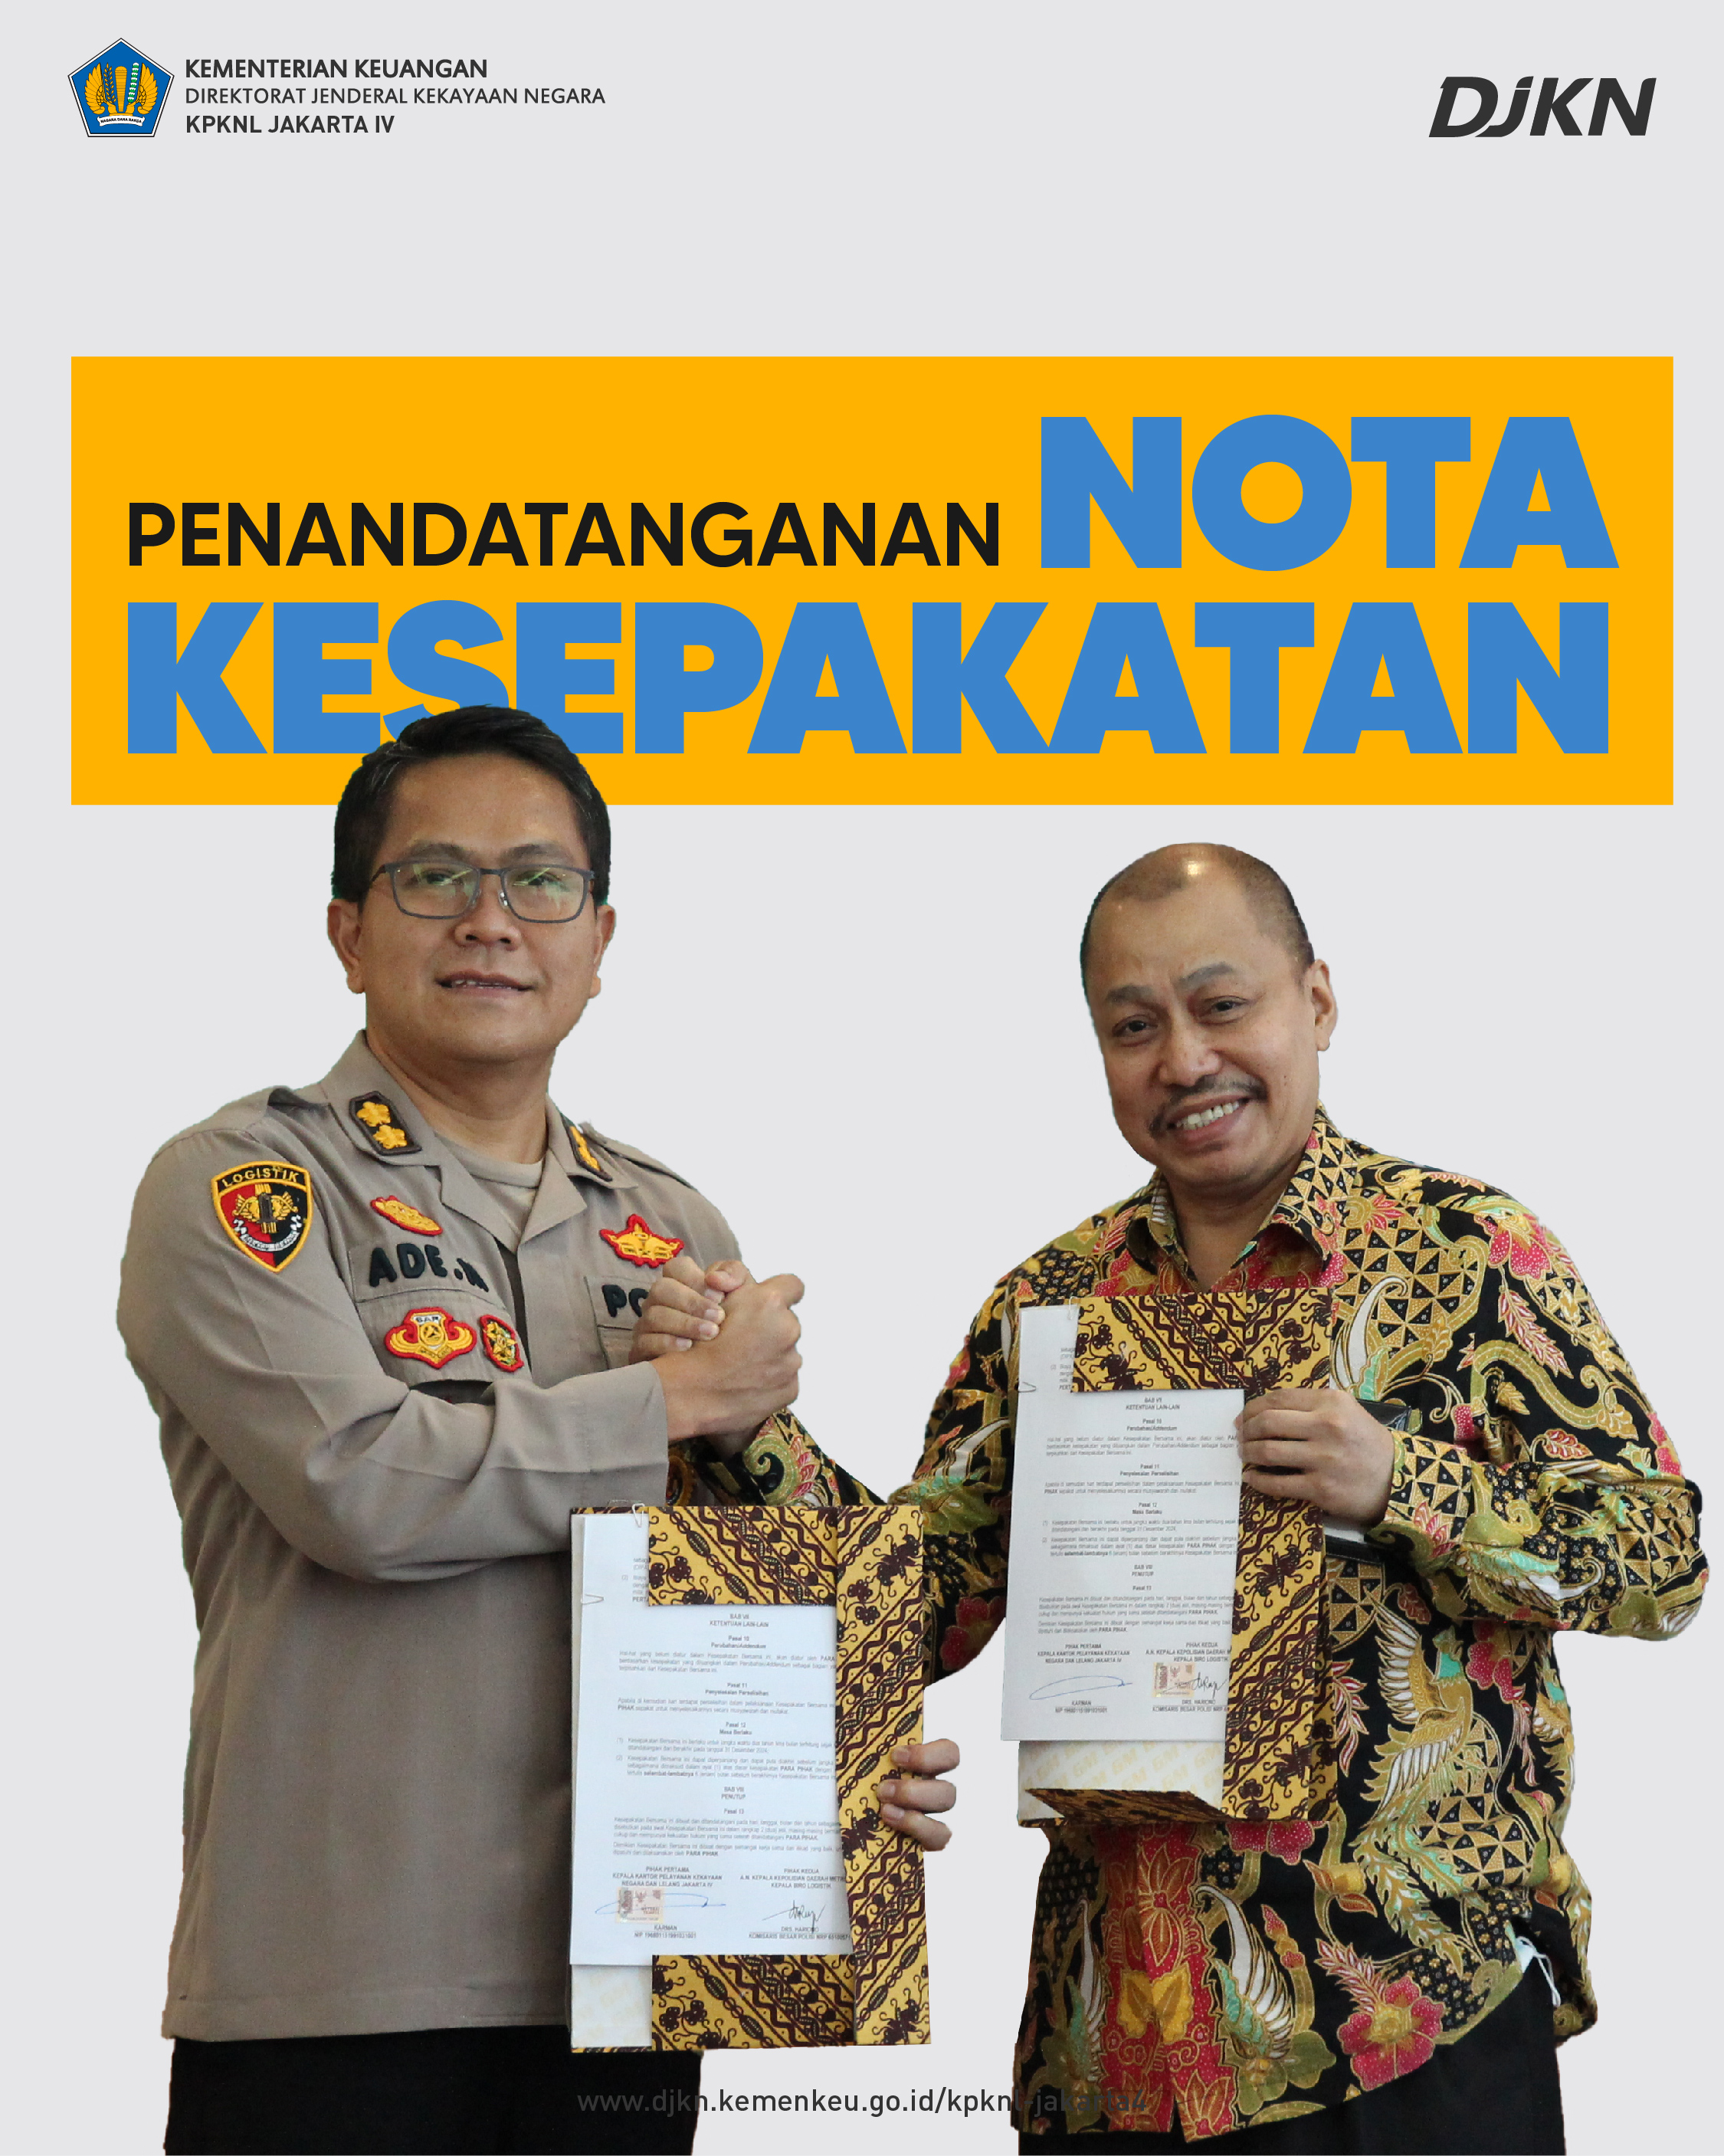 Penandatanganan Nota Kesepakatan dengan Polda Metro Jaya, Sebuah Integrasi Layanan dari KPKNL Jakarta IV